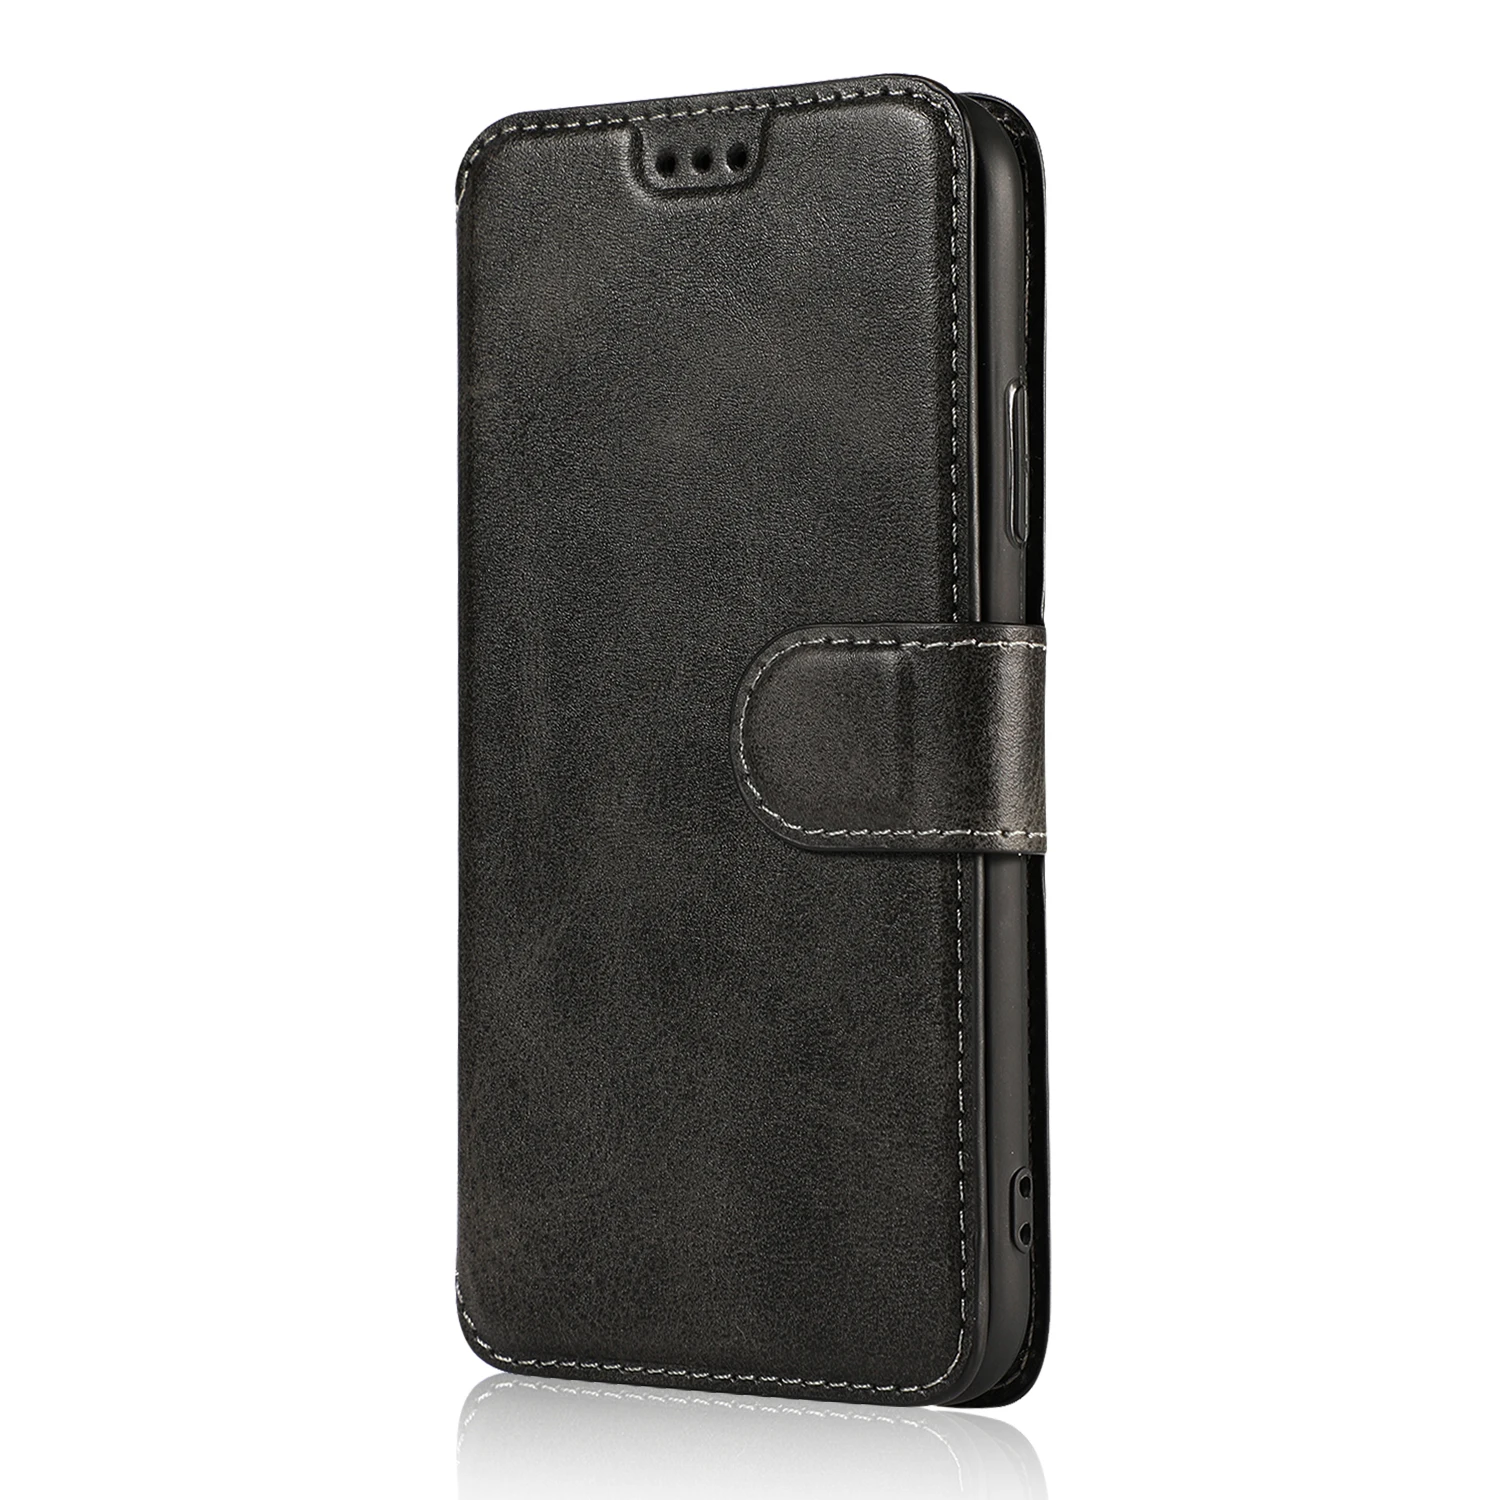 Роскошный кожаный флип-чехол в стиле ретро для Iphone Xs Max Xr X 8 7 6 6s Plus Etui держатель для карт кошелек Подставка для телефона чехол для Iphone 5 5S se - Цвет: Black zhiyue